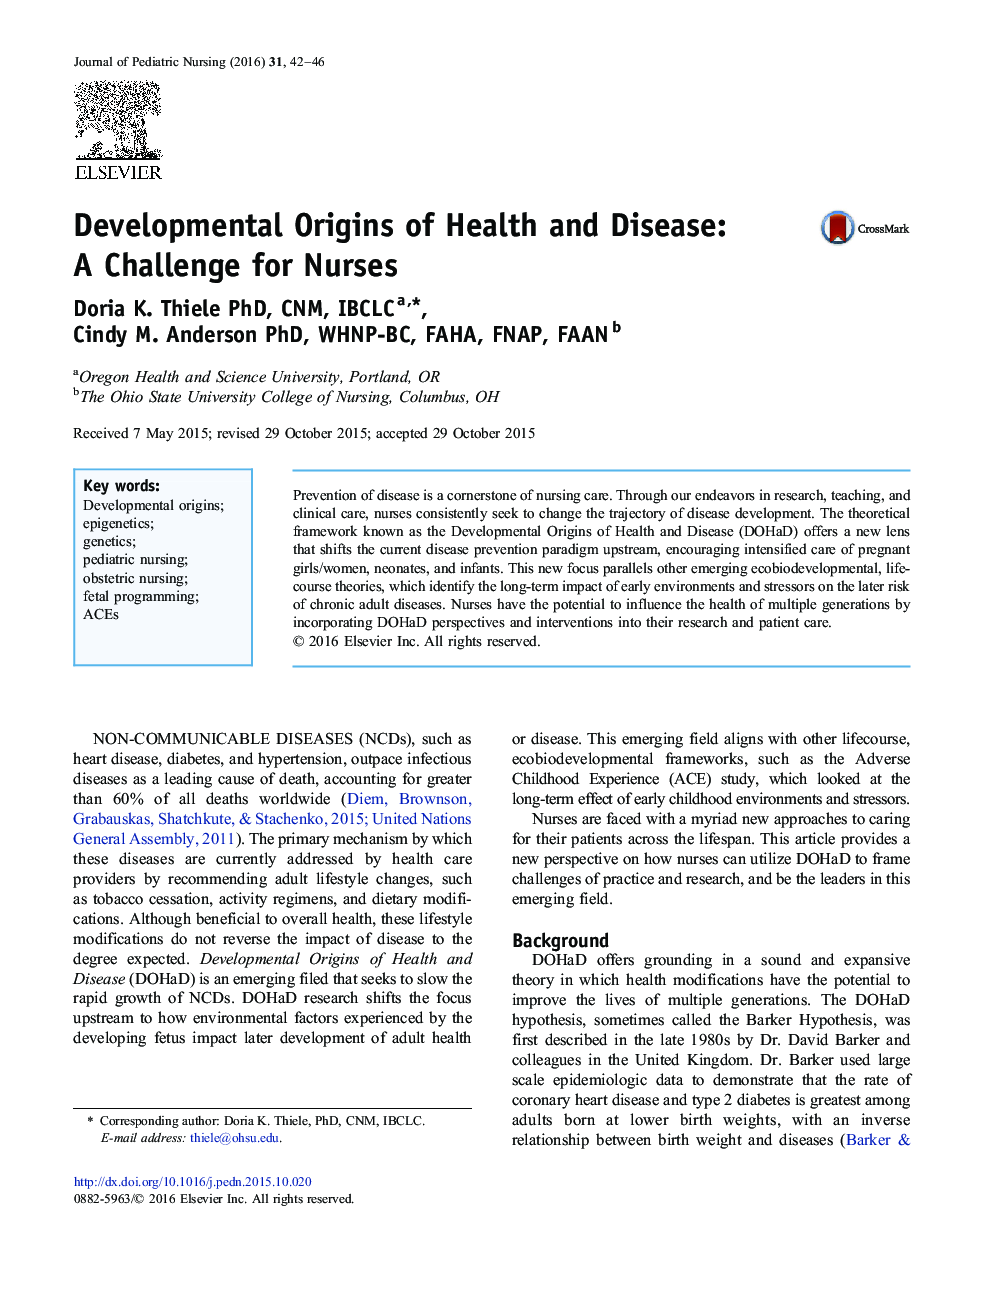 ریشه های توسعه سلامت و بیماری: یک چالش برای پرستاران